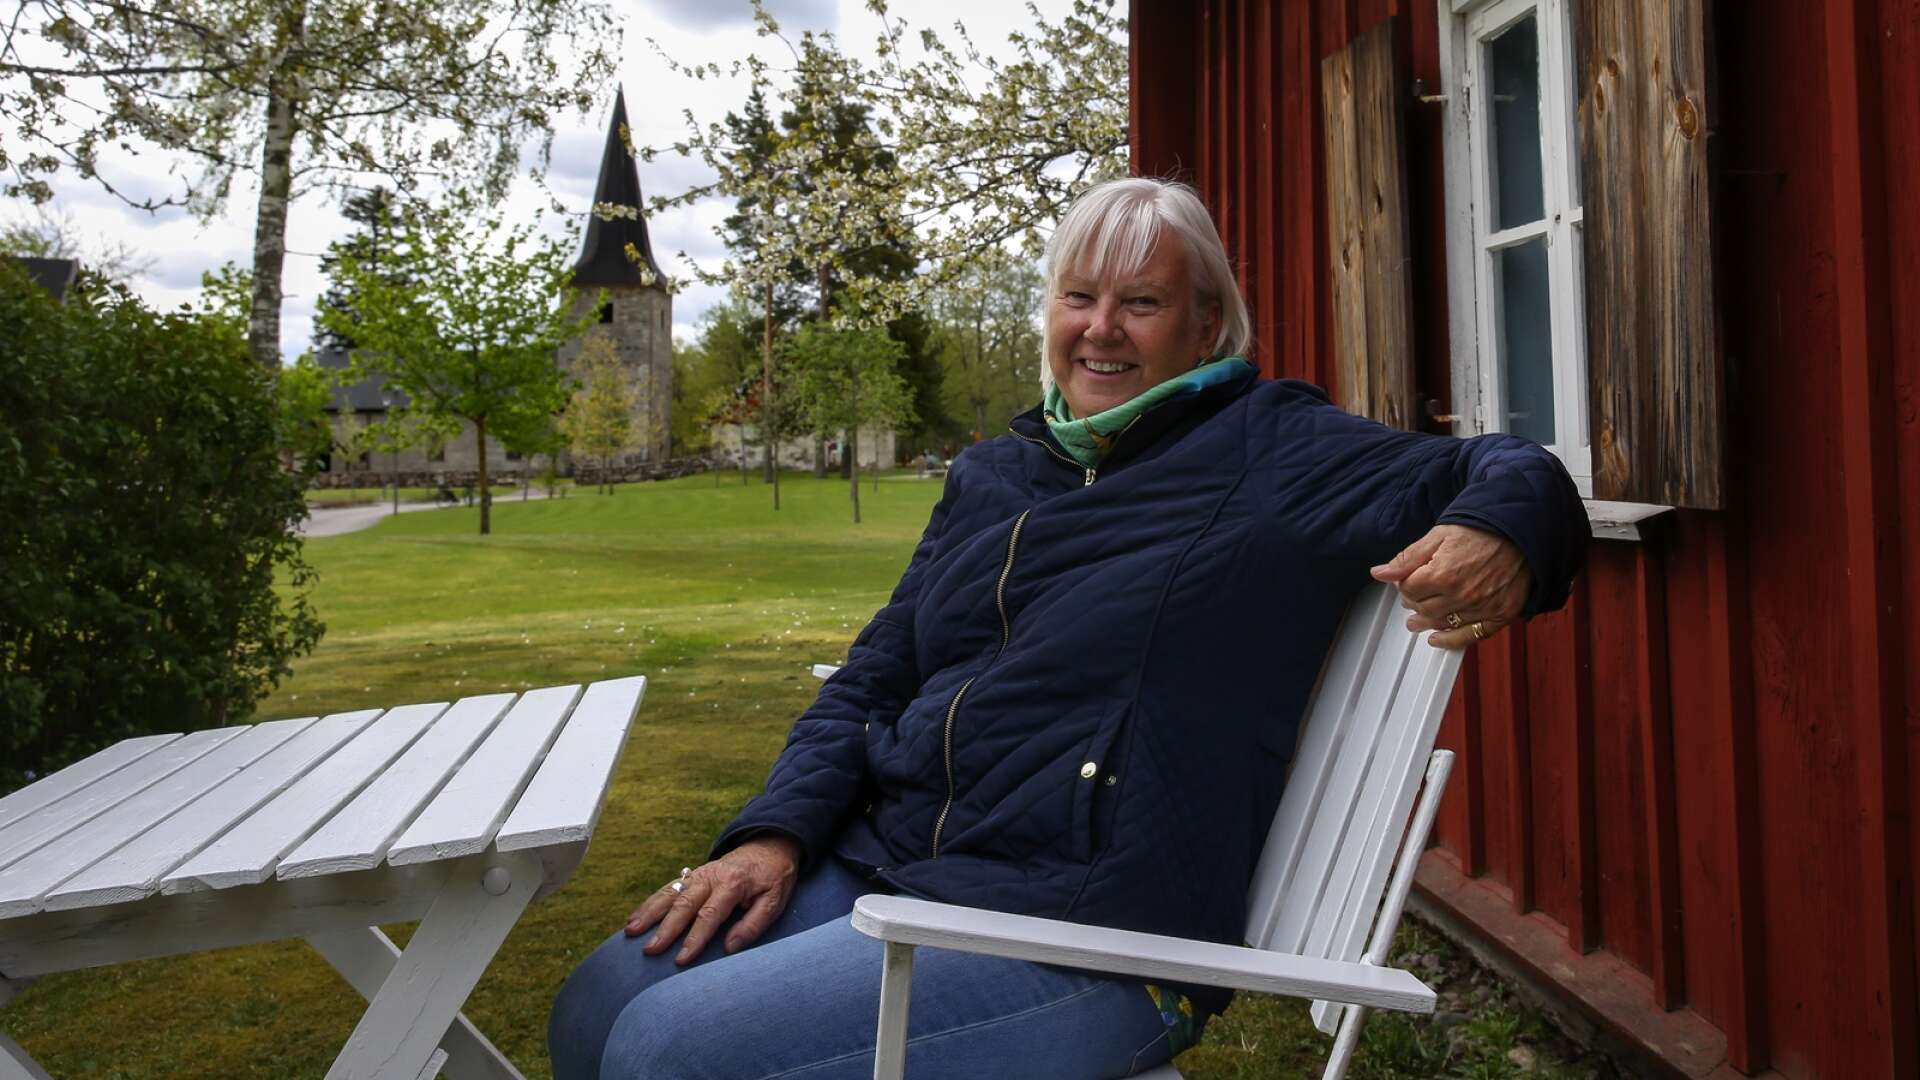 Solveig Johansson är spindeln i nätet för Rådalyftet som har legat i dvala under två års tid. Nu hoppas hon på många besökare när Rådalyftet är tillbaka.